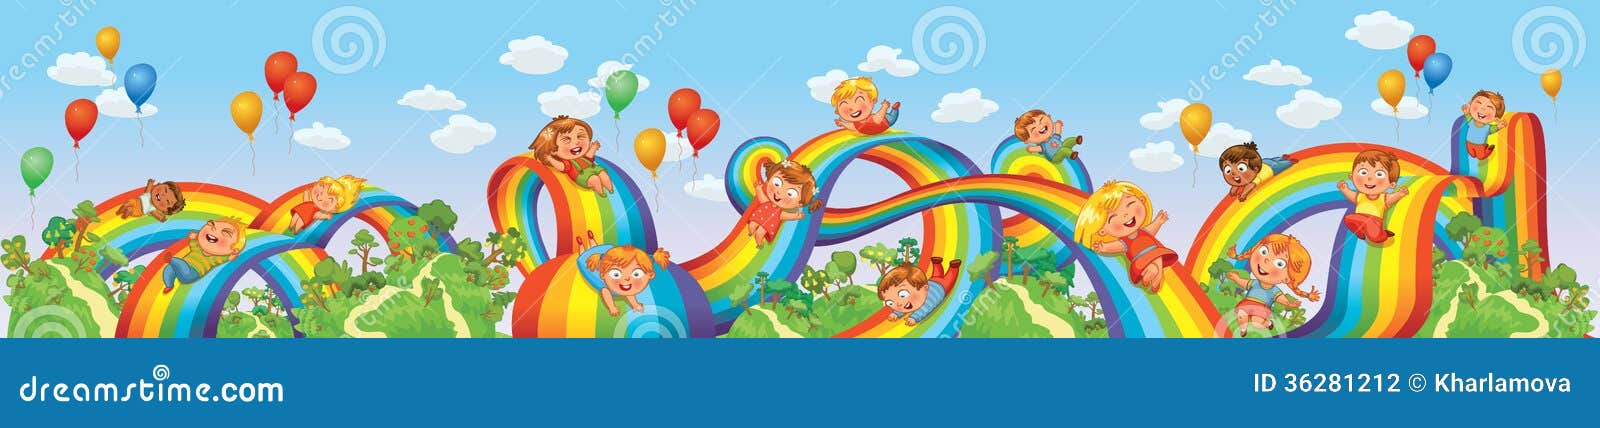 children slide down on a rainbow. roller coaster ride